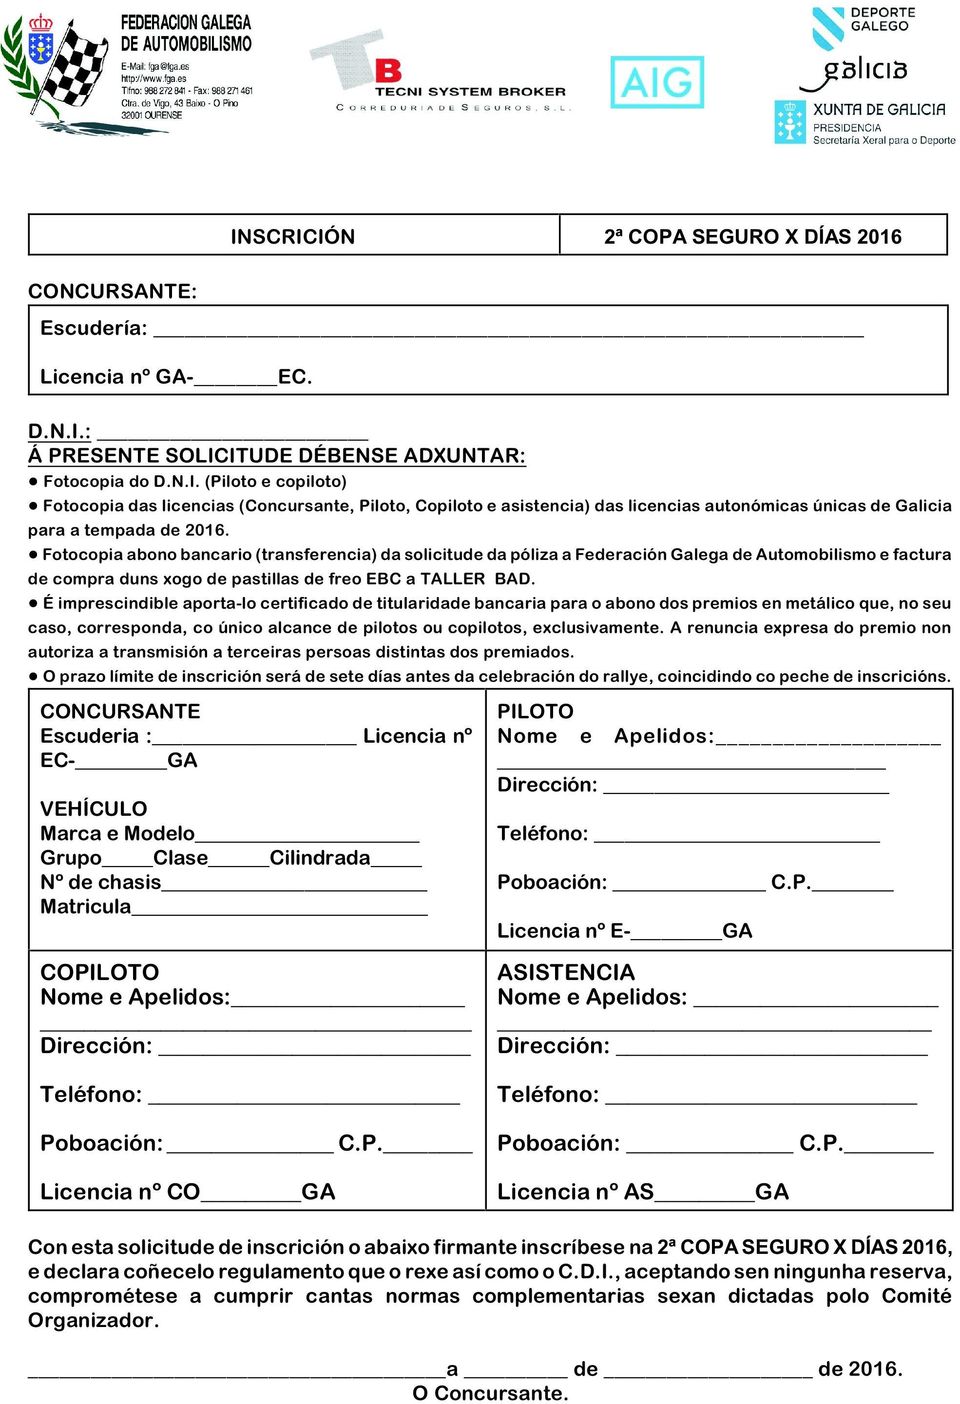 ! Fotocopia abono bancario (transferencia) da solicitude da póliza a Federación Galega de Automobilismo e factura de compra duns xogo de pastillas de freo EBC a TALLER BAD.